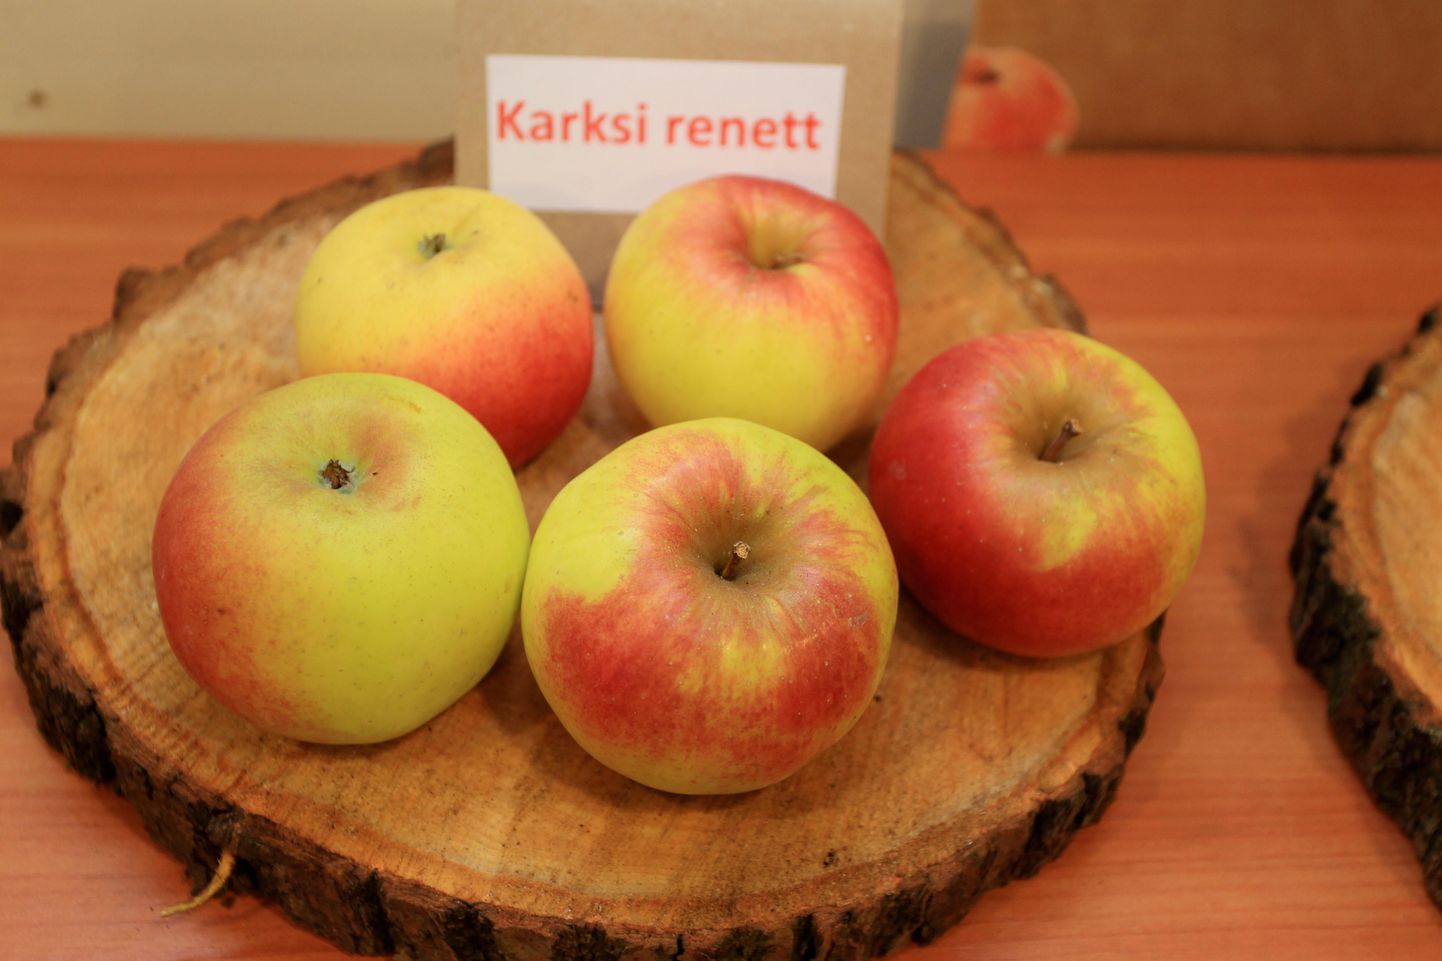 Eestis kasvatatakse õunasorte «Liivi kuldrenett» ja «Karksi renett» ning nende viljad ei sarnane Mulgi Õuna pakutavatega.